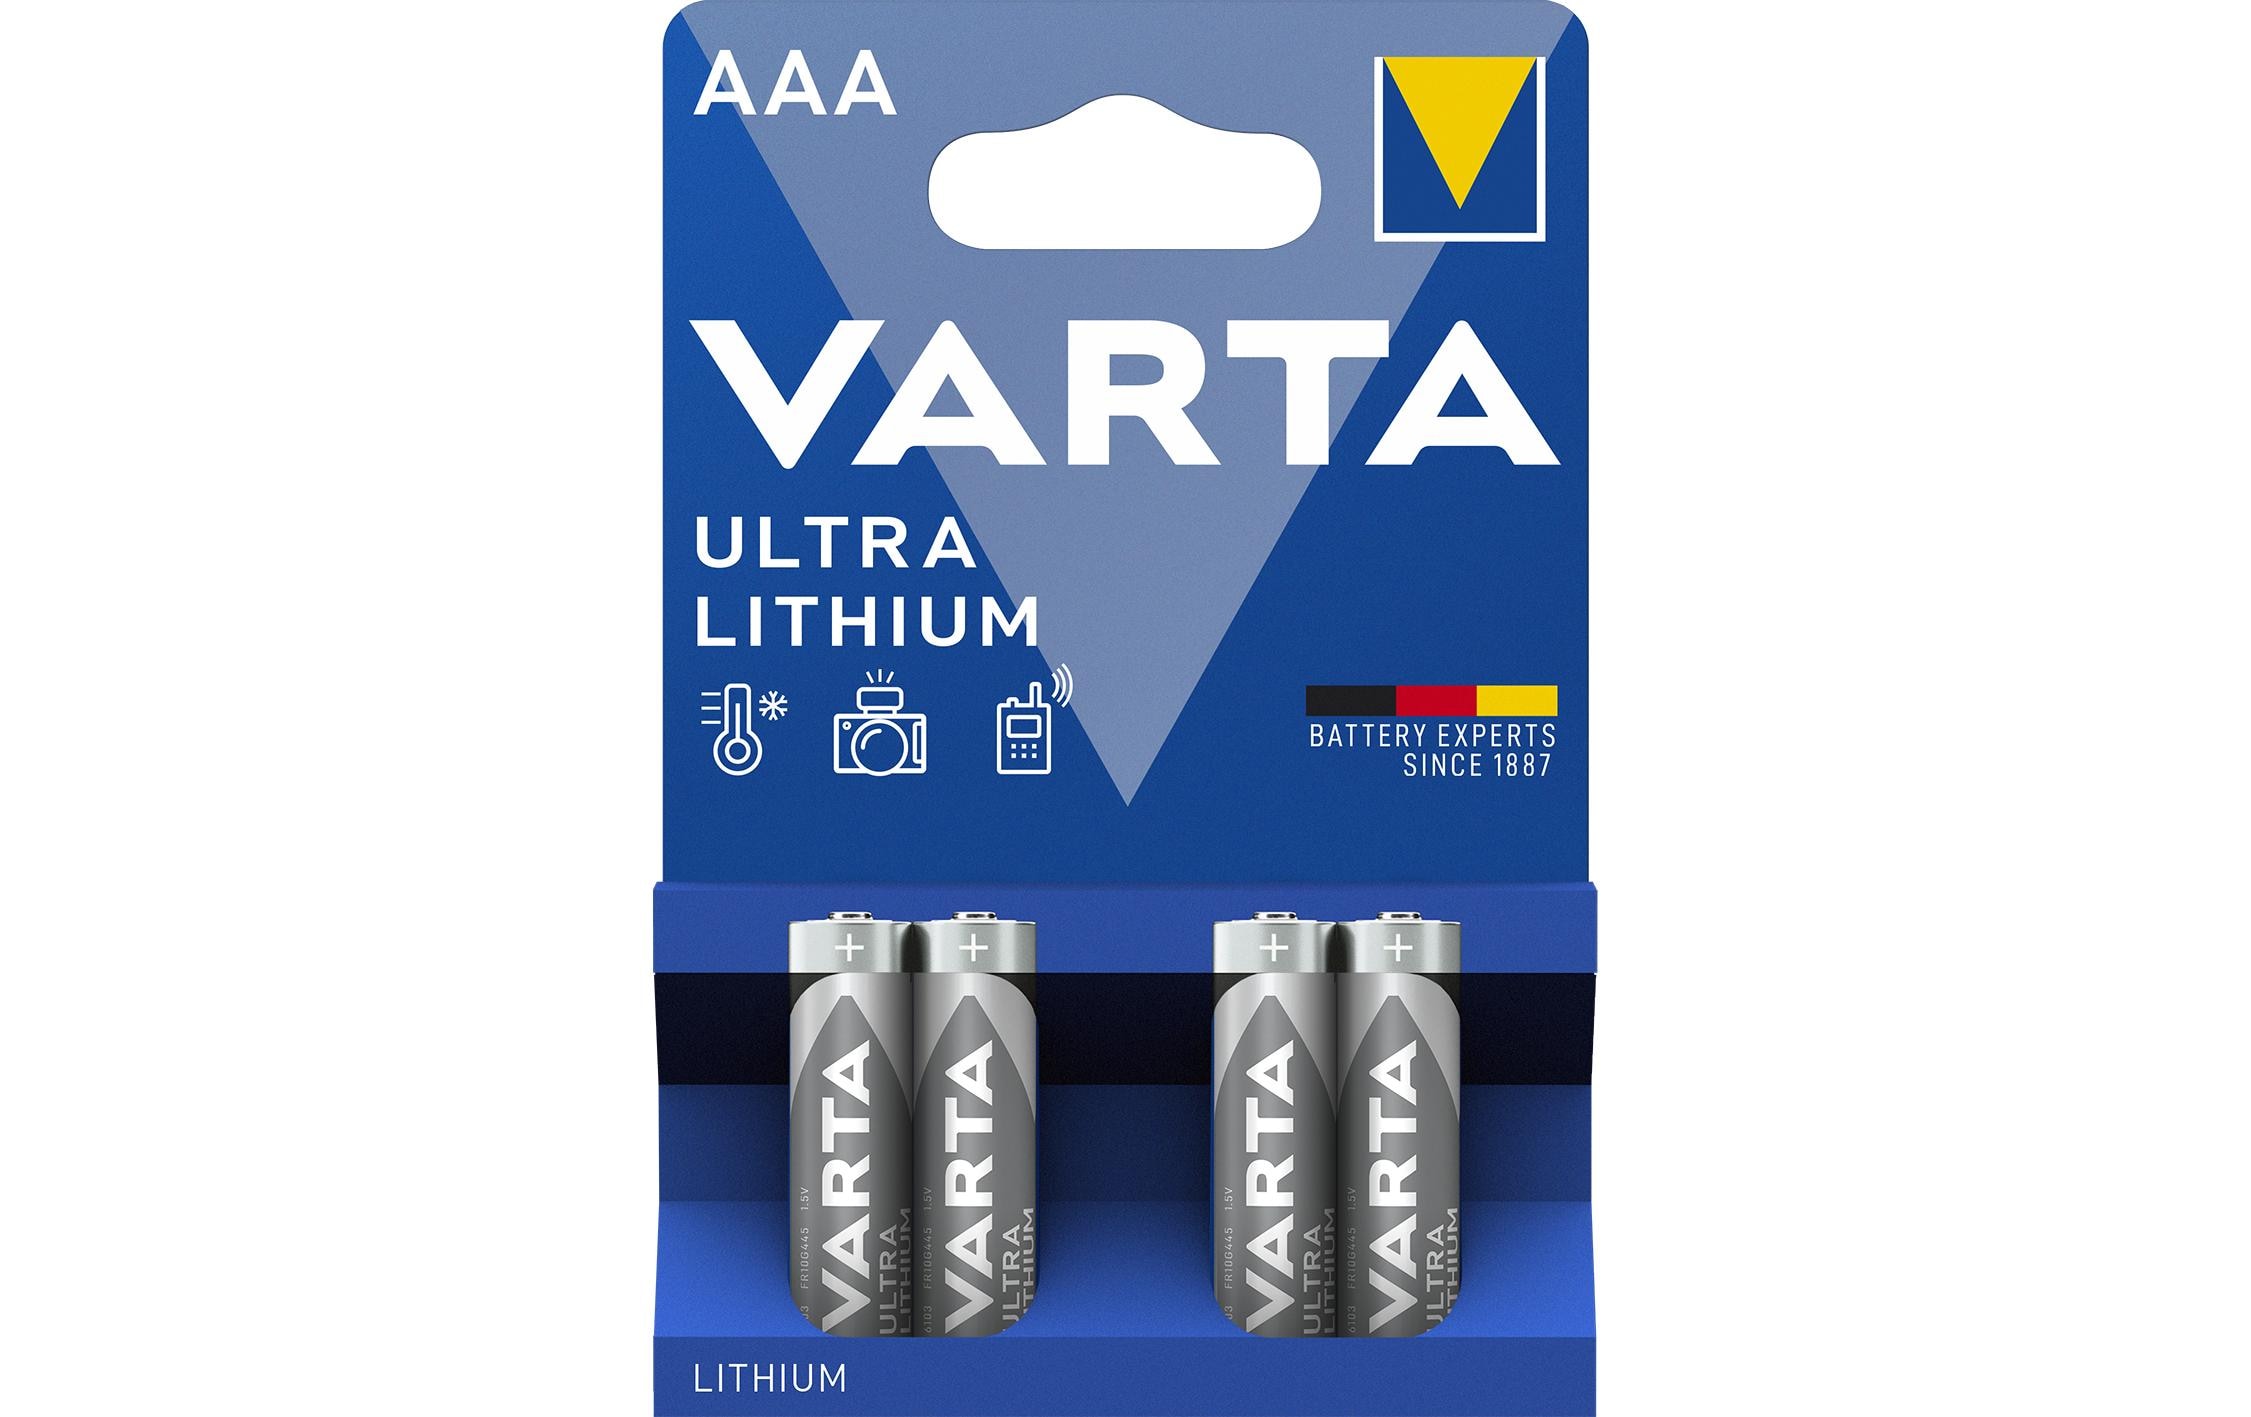 Varta Batterie Ultra Lithium AAA 4 Stück